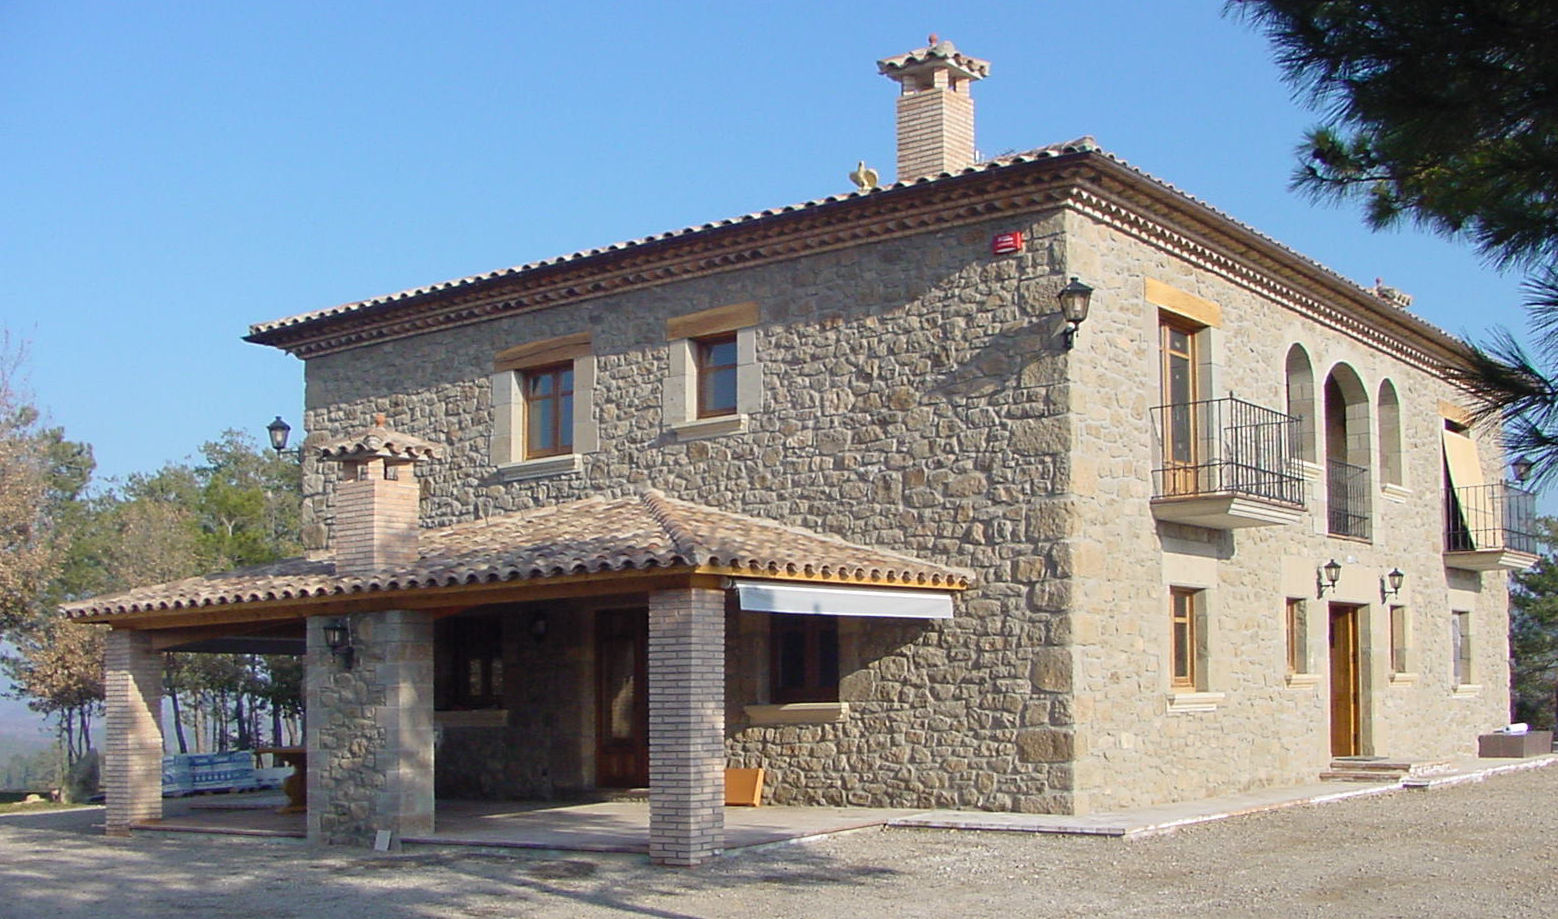 Casa de turismo rural en la Torre d'Oristà (Barcelona), ALENTORN i ALENTORN ARQUITECTES, SLP ALENTORN i ALENTORN ARQUITECTES, SLP Rustic style houses Stone